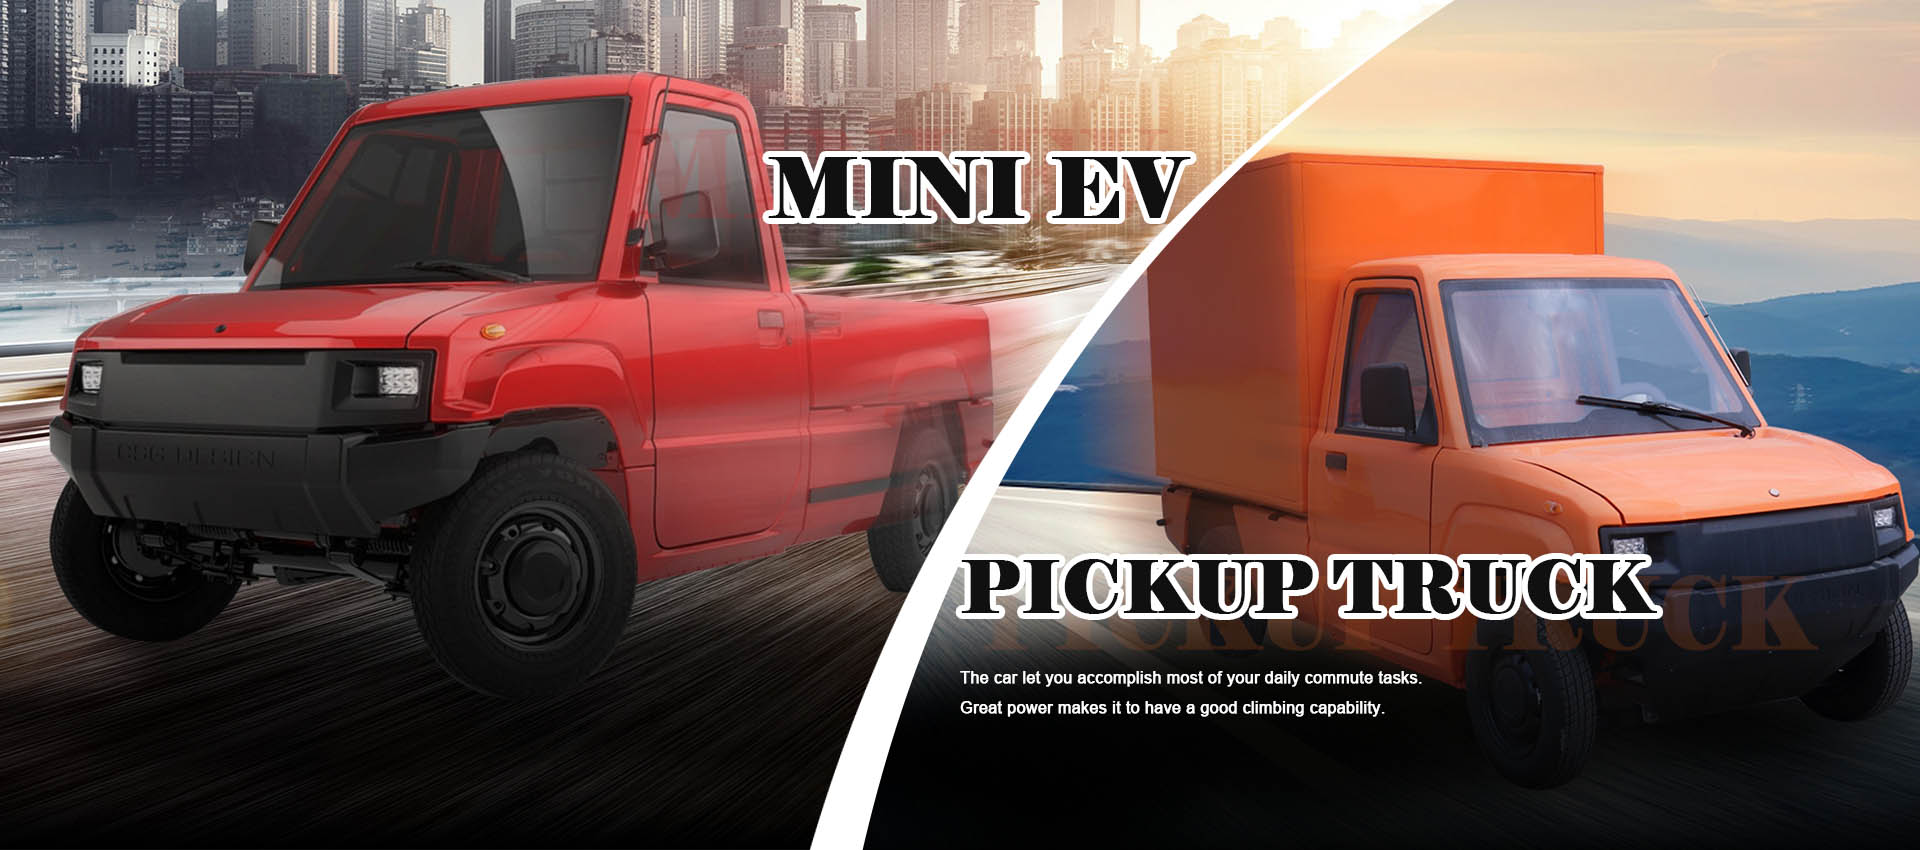 Hersteller von Mini-EV-Pickups